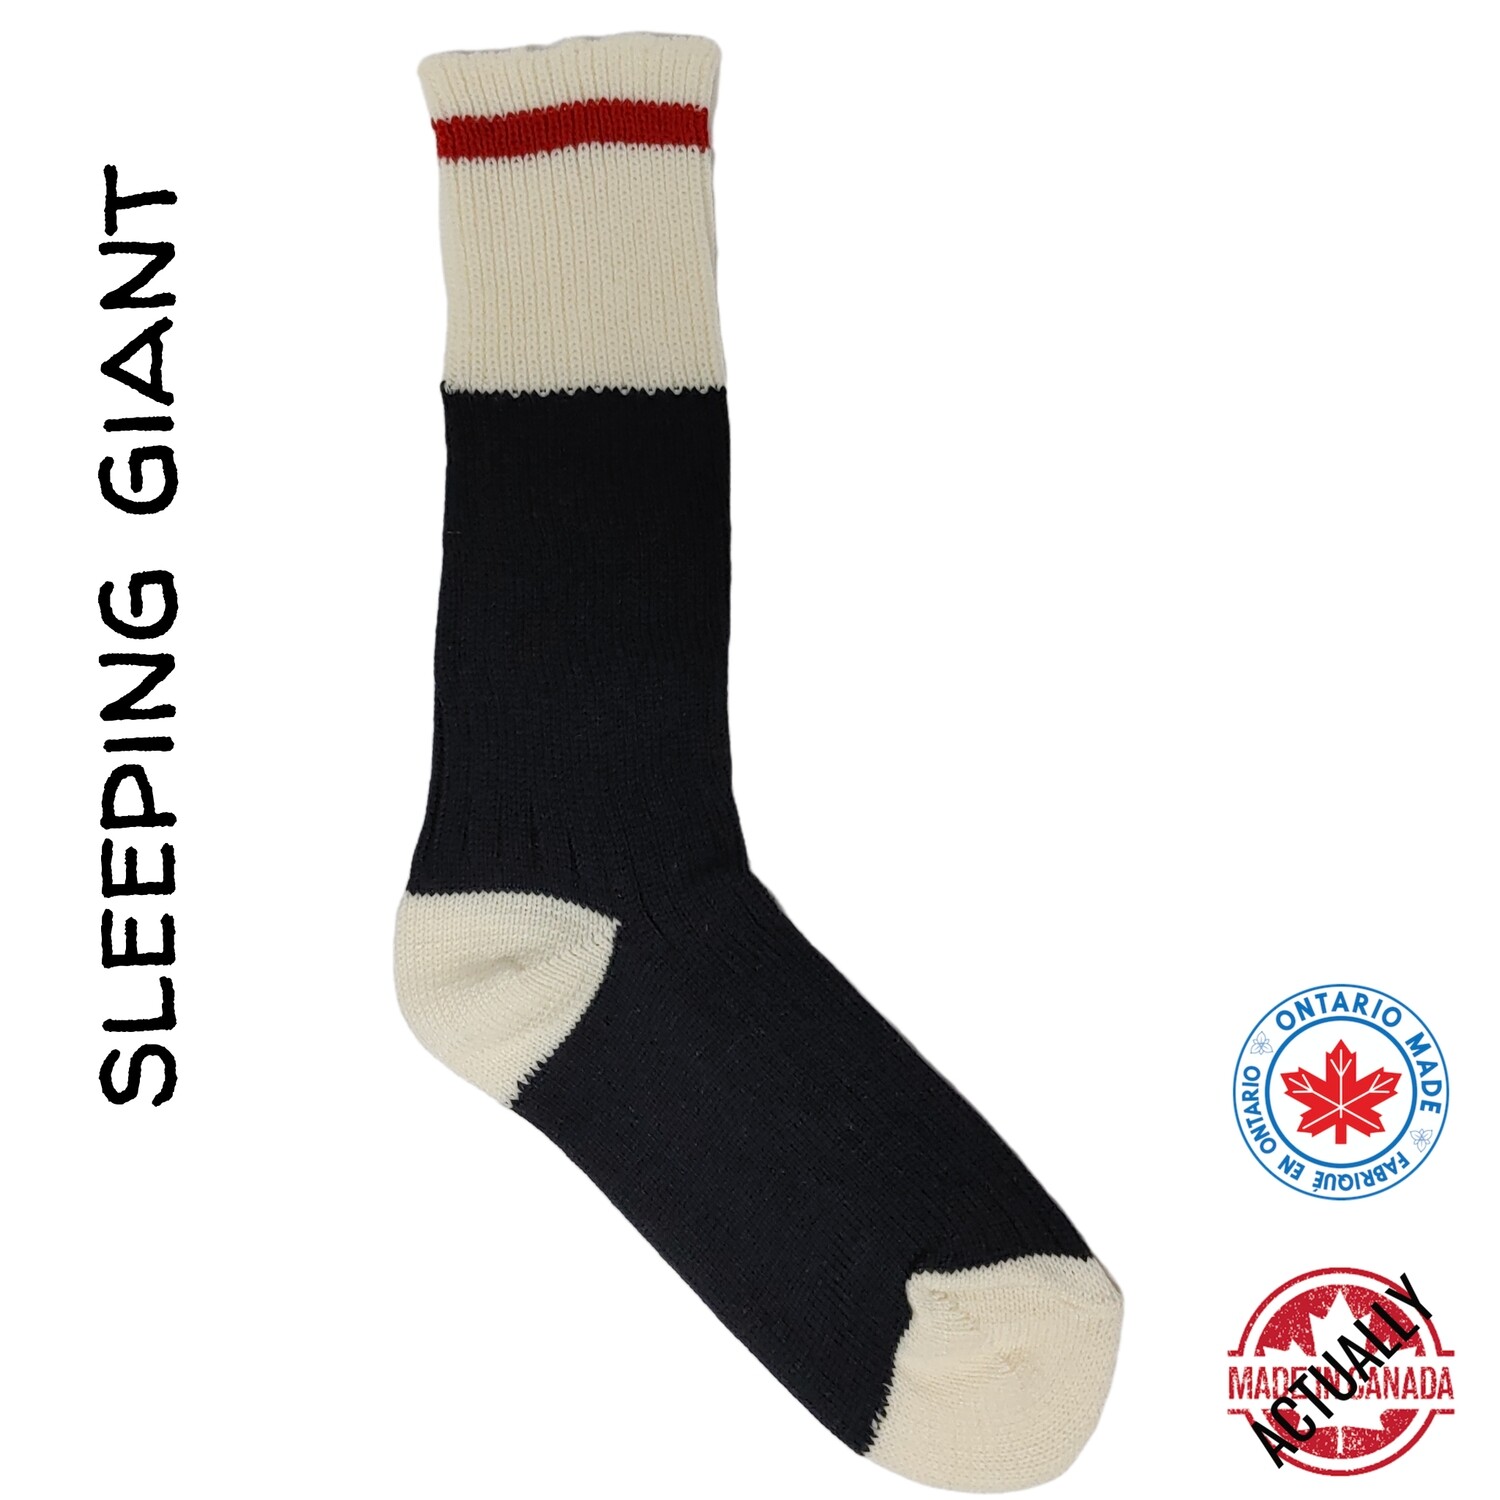 Sleeping Giant Wool Boot Sock 2-pair pack